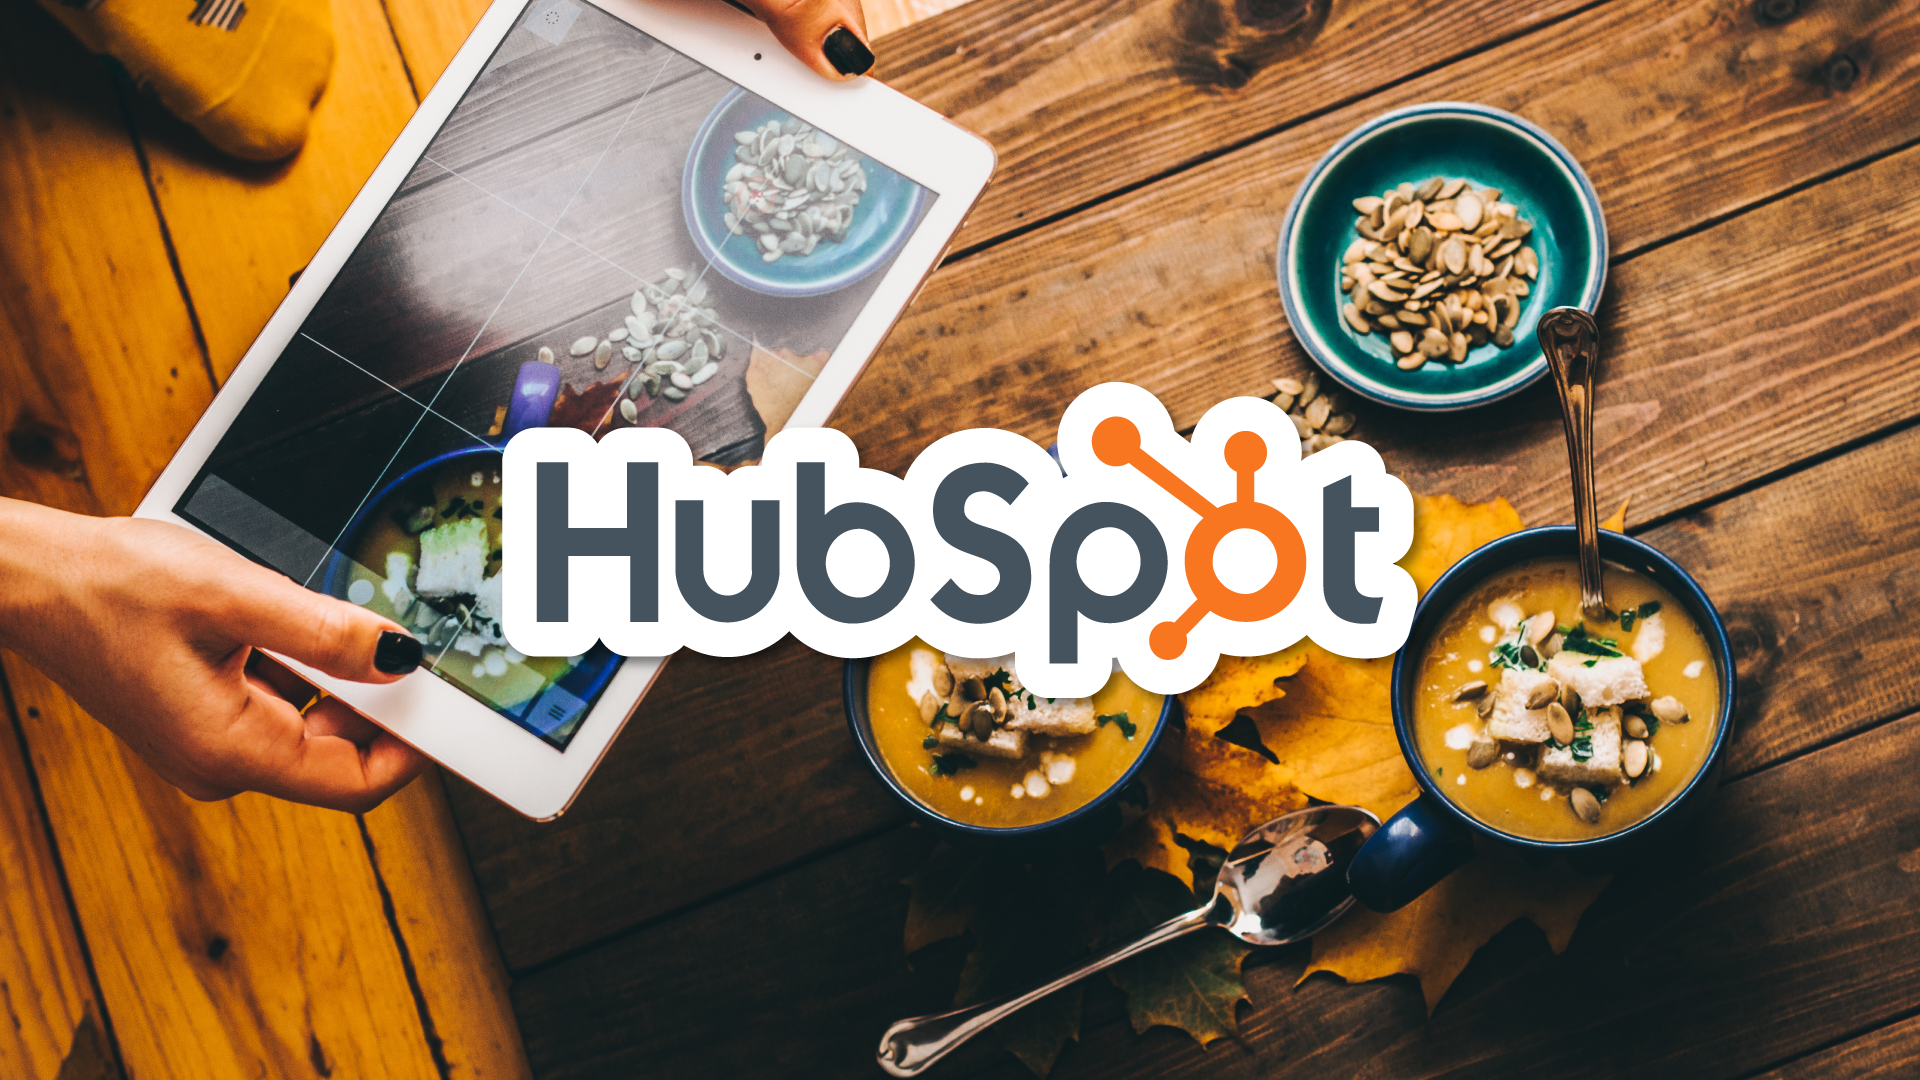 engagebay vs hubspot, hubspot engagebay, hubspot vs engagebay, engagebay alternatives, engagebay tutorial